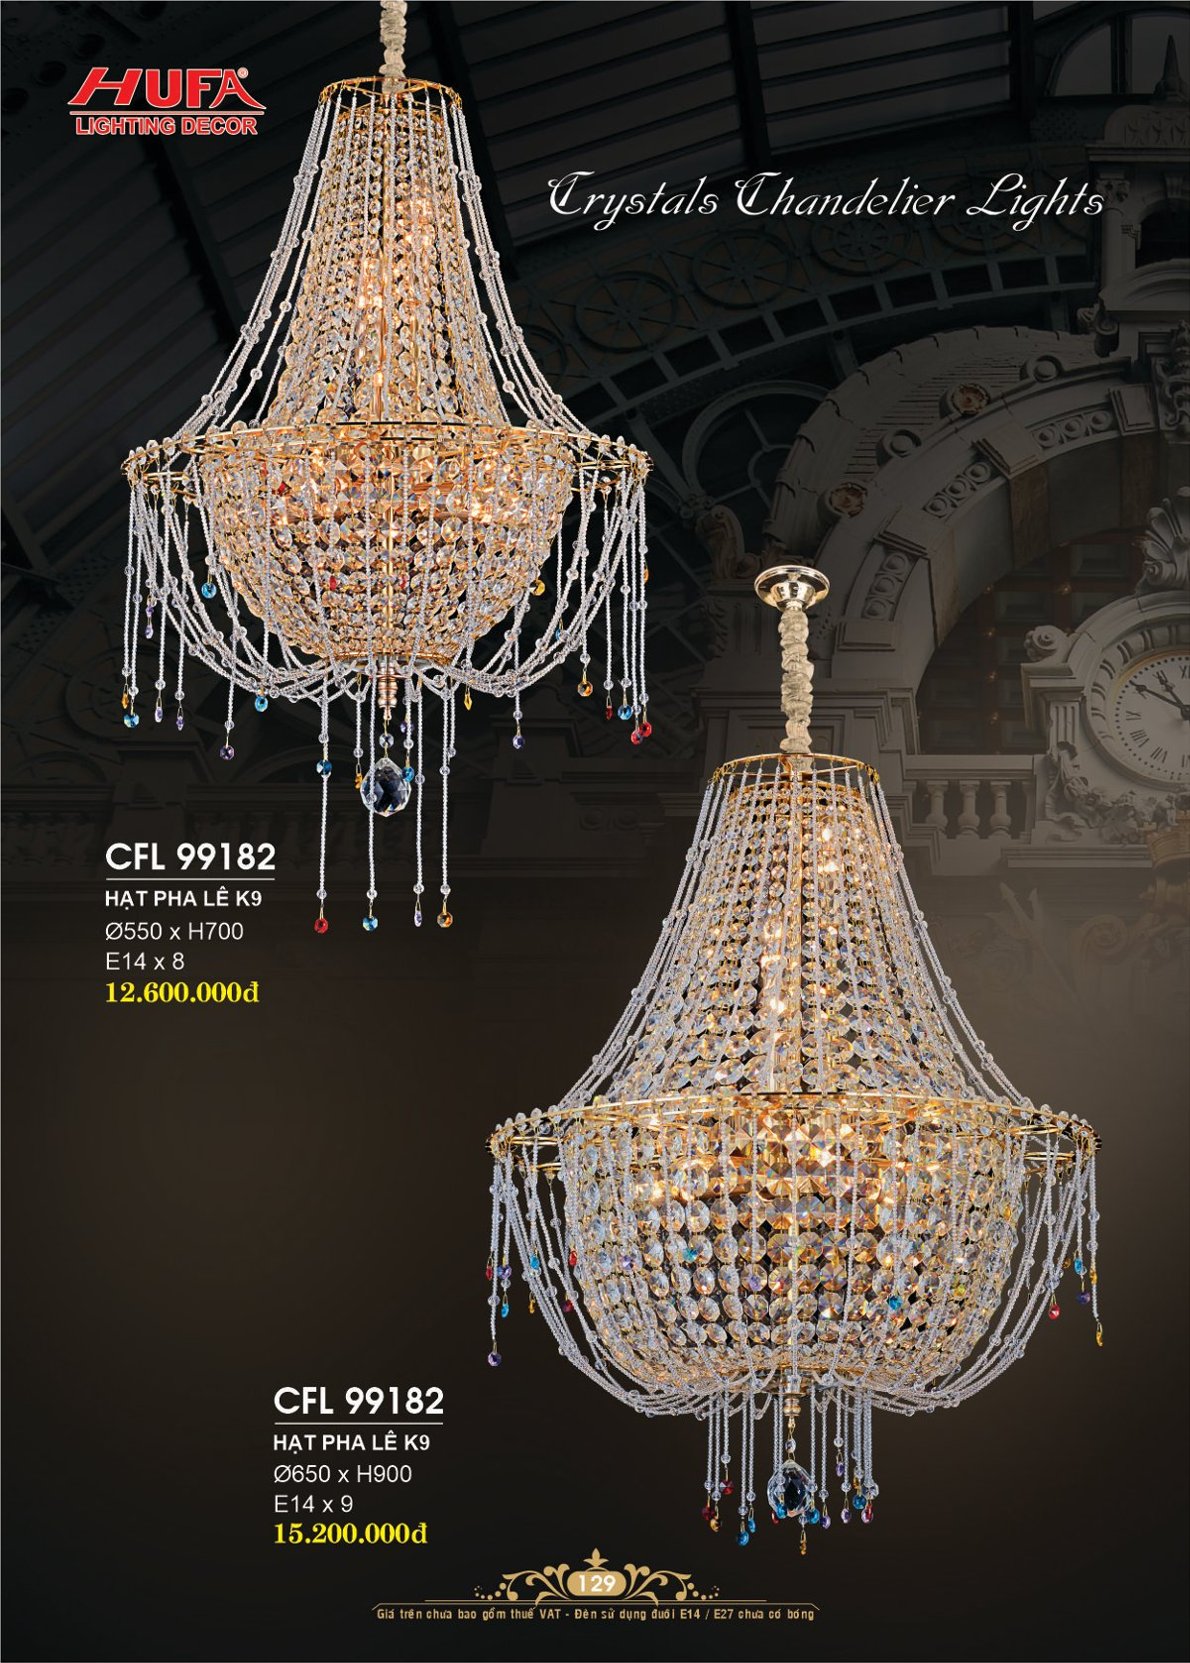 Đèn chùm pha lê, đèn trang trí Hufa CFL 2513/630 cao cấp giá rẻ bảo hành lâu dài, hỗ trợ lắp đặt, giao hàng toàn quốc. Đèn pha lê Hufa được bảo trì trọn đời